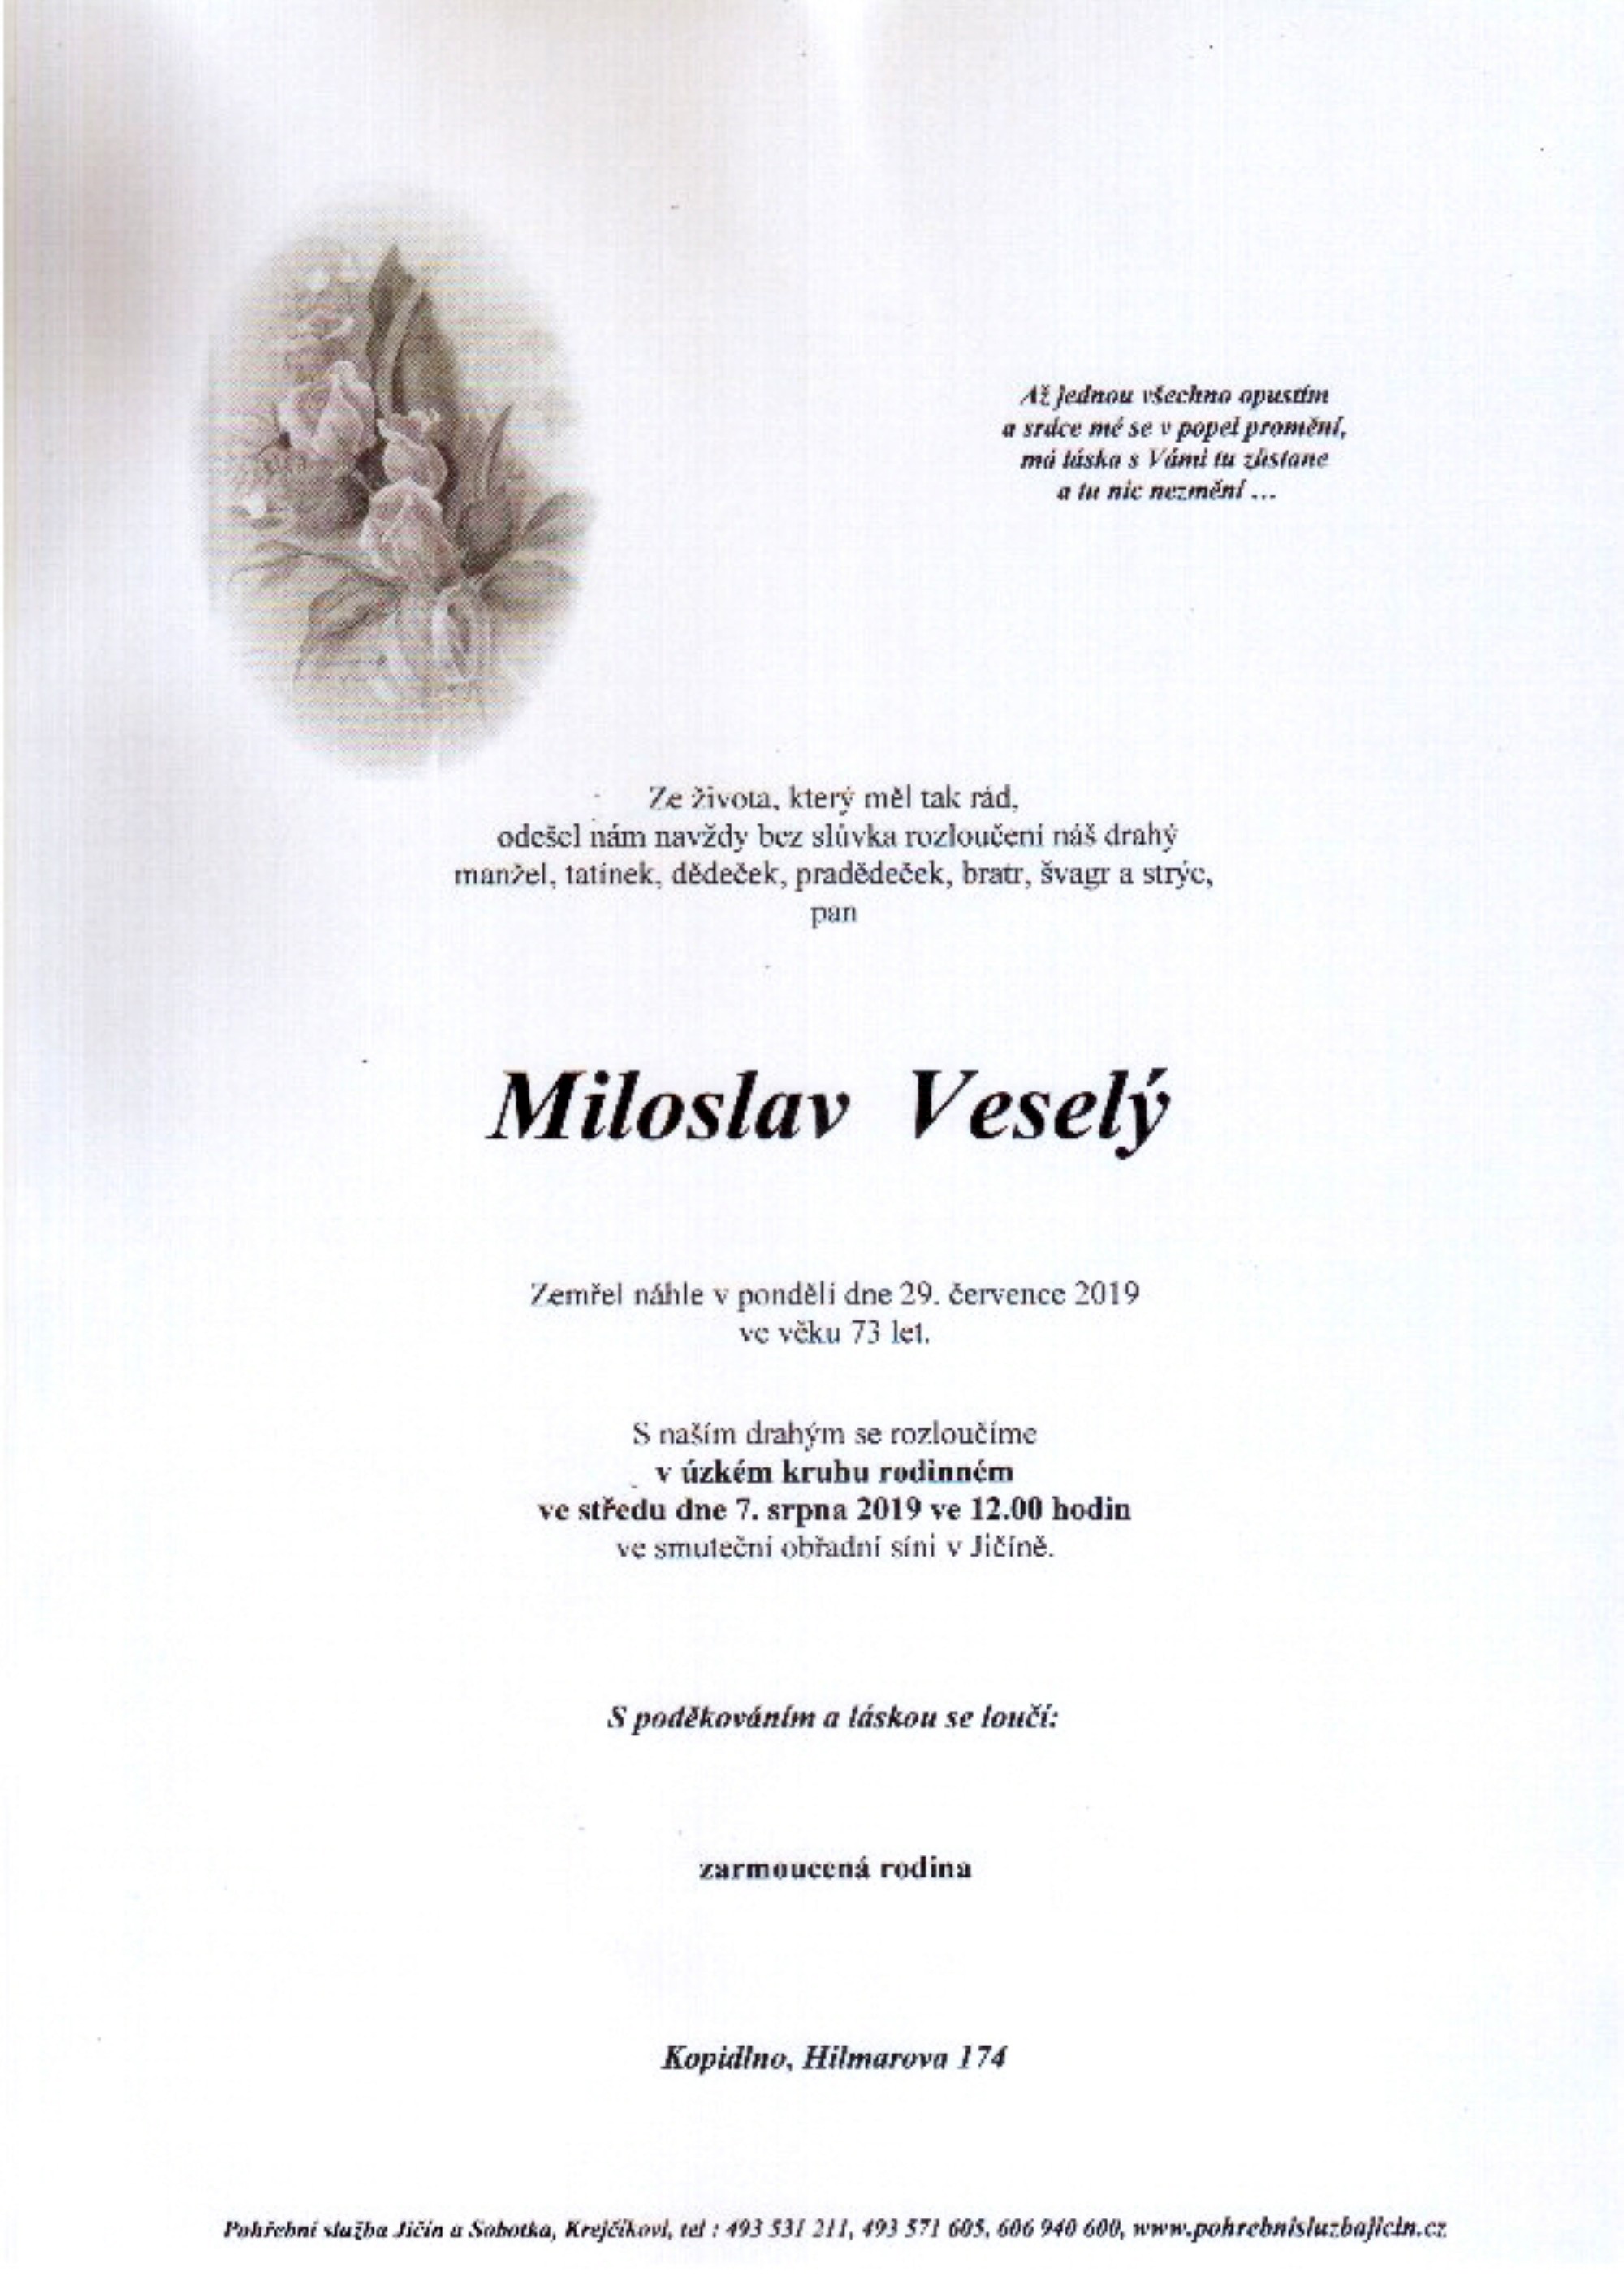 Miloslav Veselý